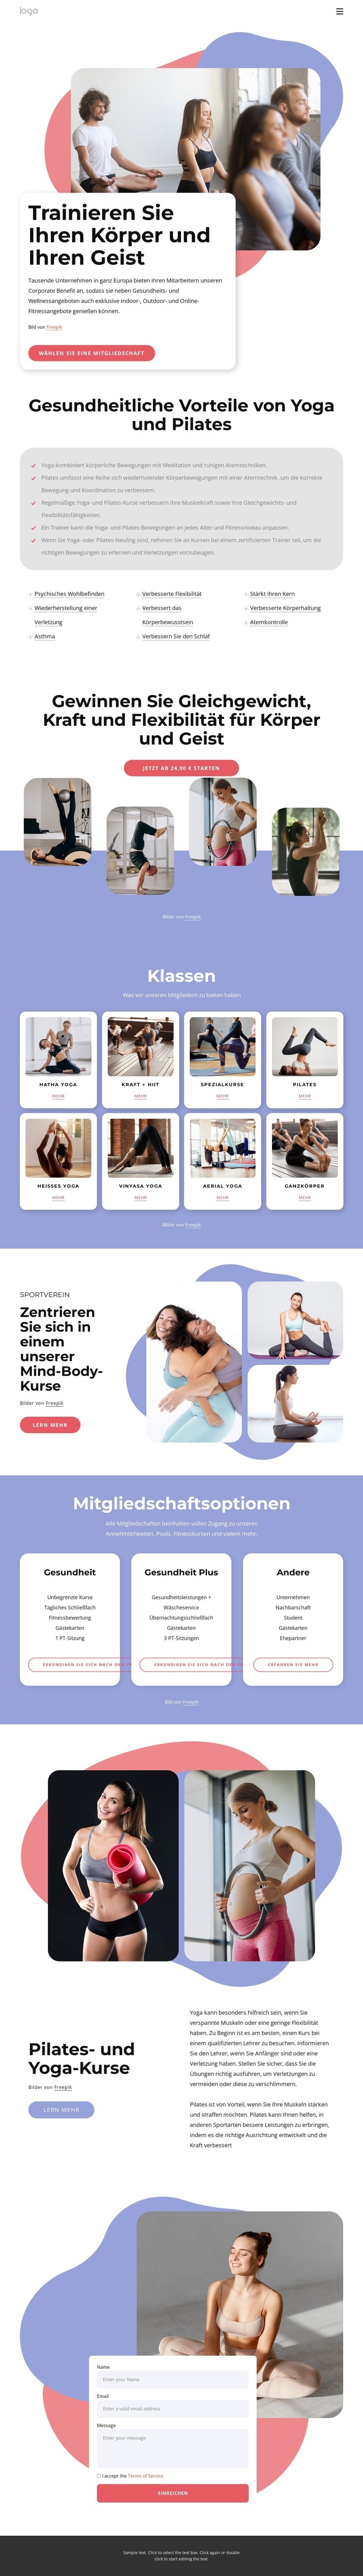 Pilates- und Yoga-Kurse HTML5-Vorlage